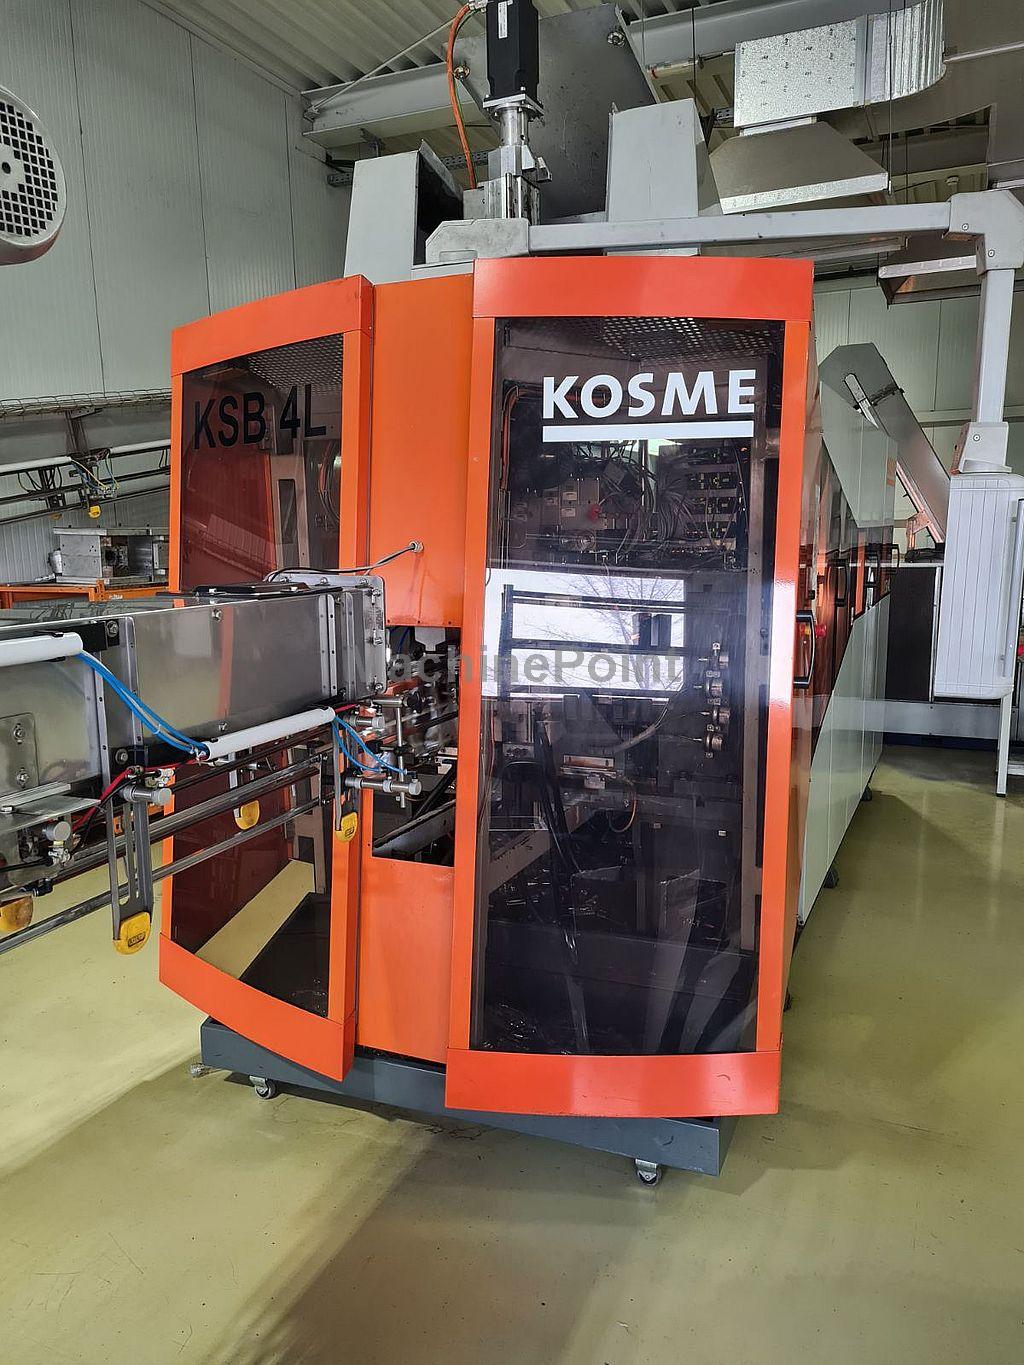 KOSME - KSB 4000 - Macchina usata